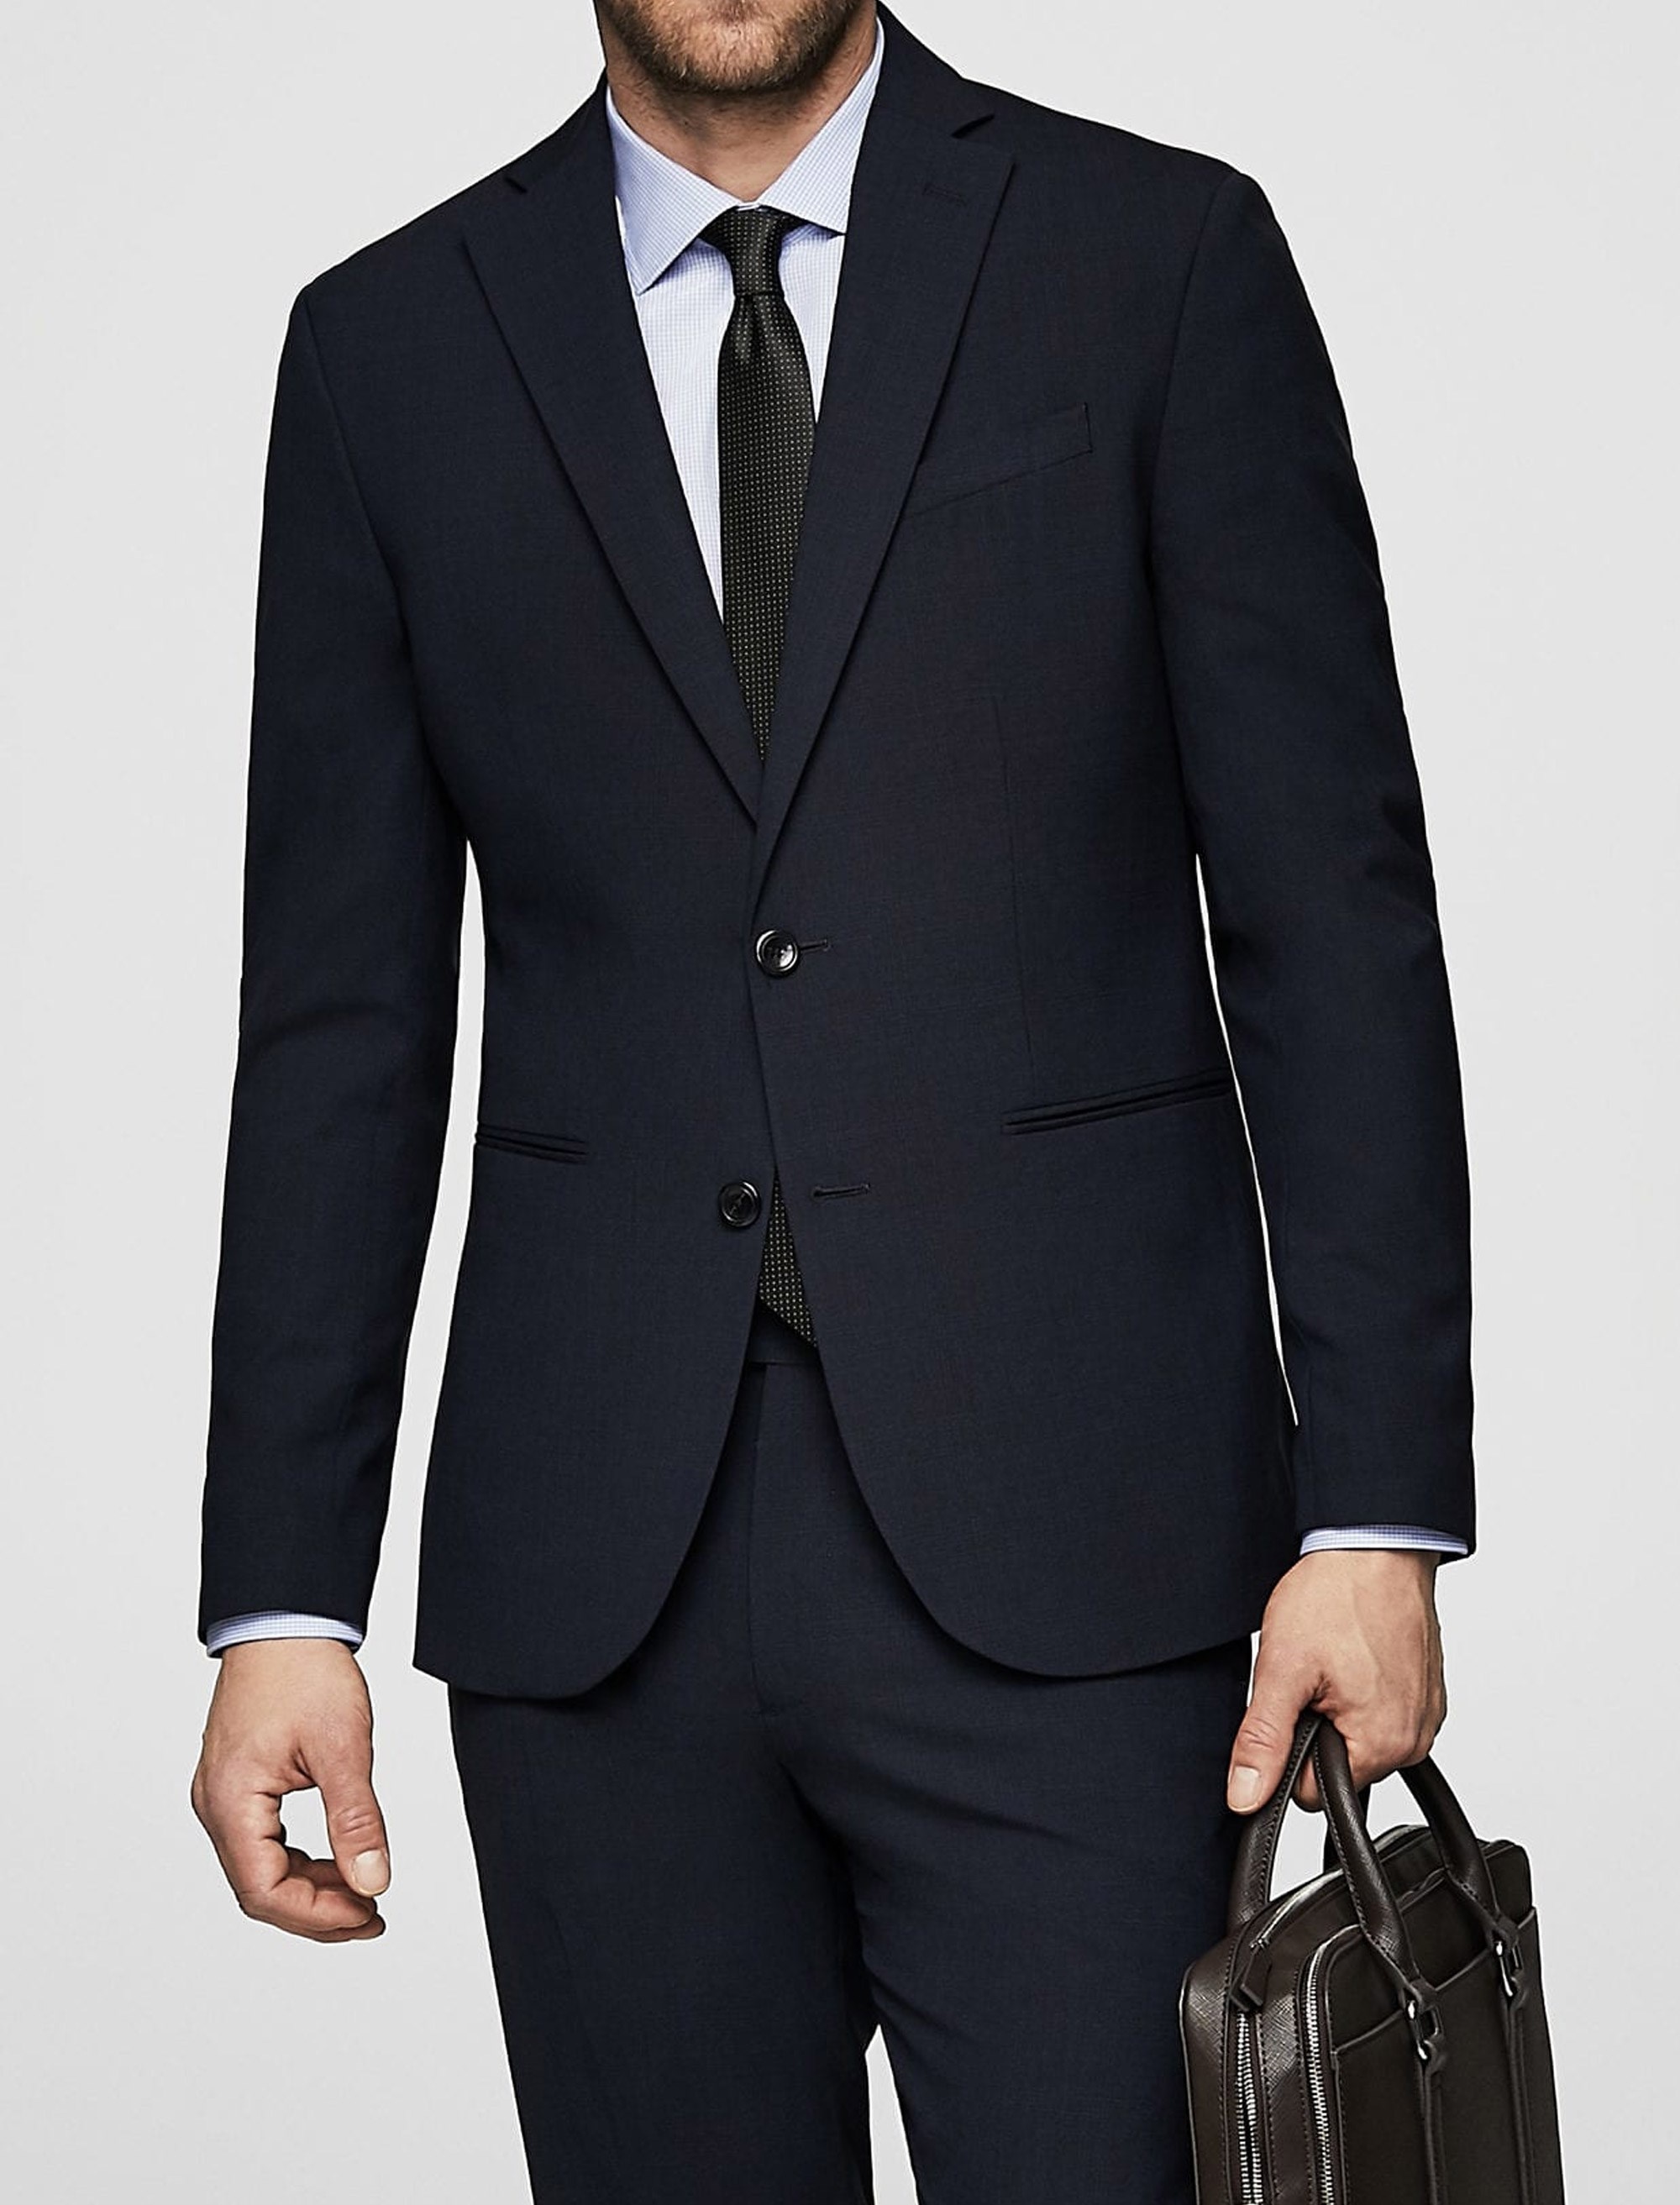 کت تک رسمی مردانه - مانگو - سرمه اي  - 3